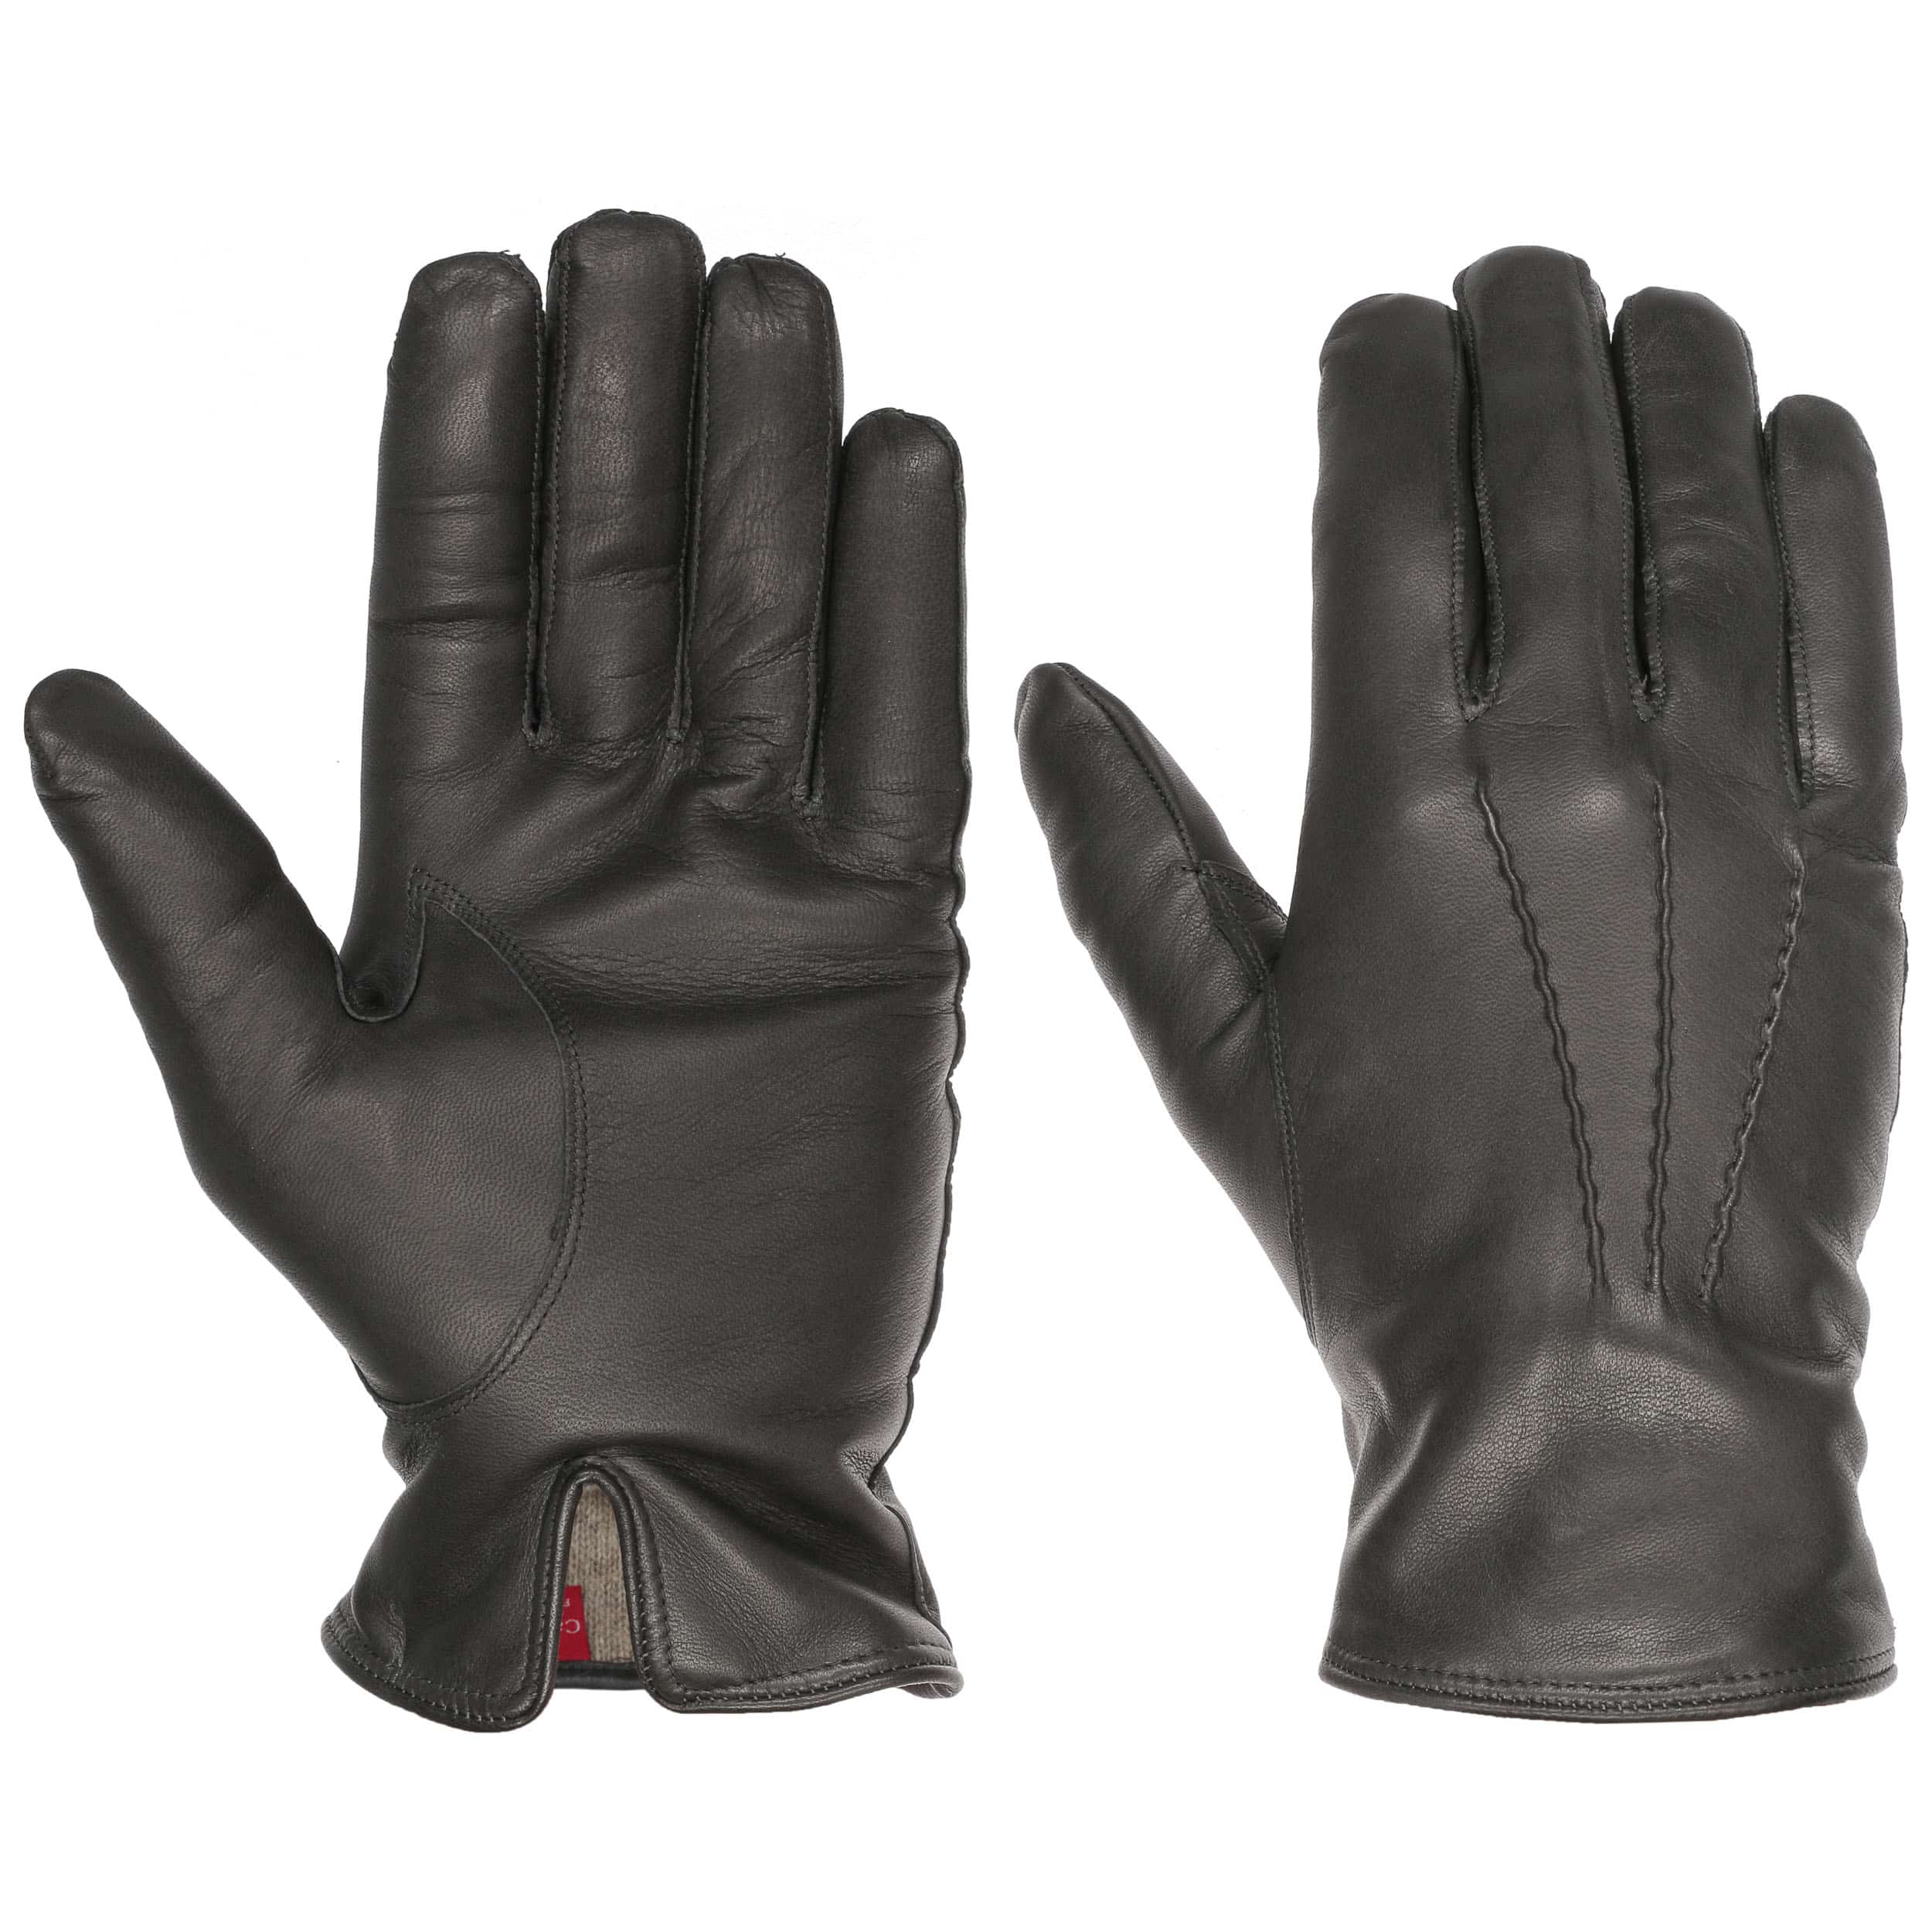 Tienda online guantes piel hombre Accesorios moda hombre